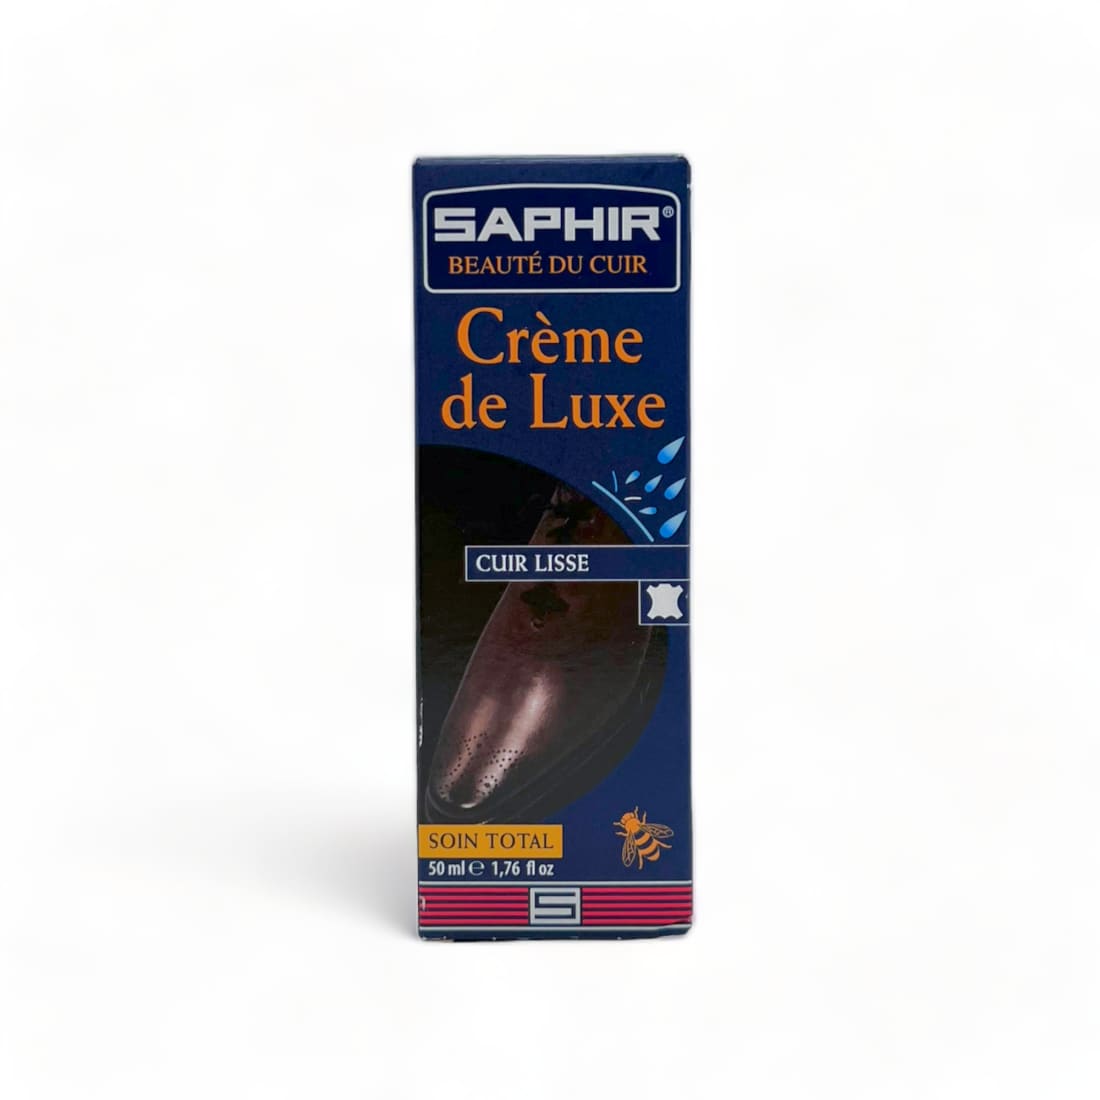 Cirage Crème de luxe Rouge Hermès - Saphir - Accessoires